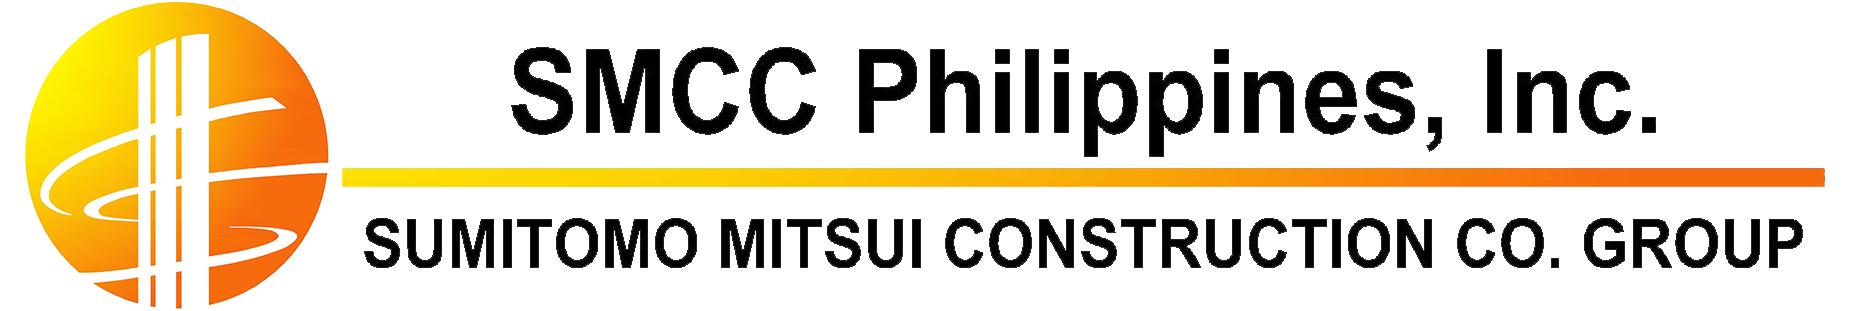 Smcc Logo - SMCC Logo. iPower Products Philippines